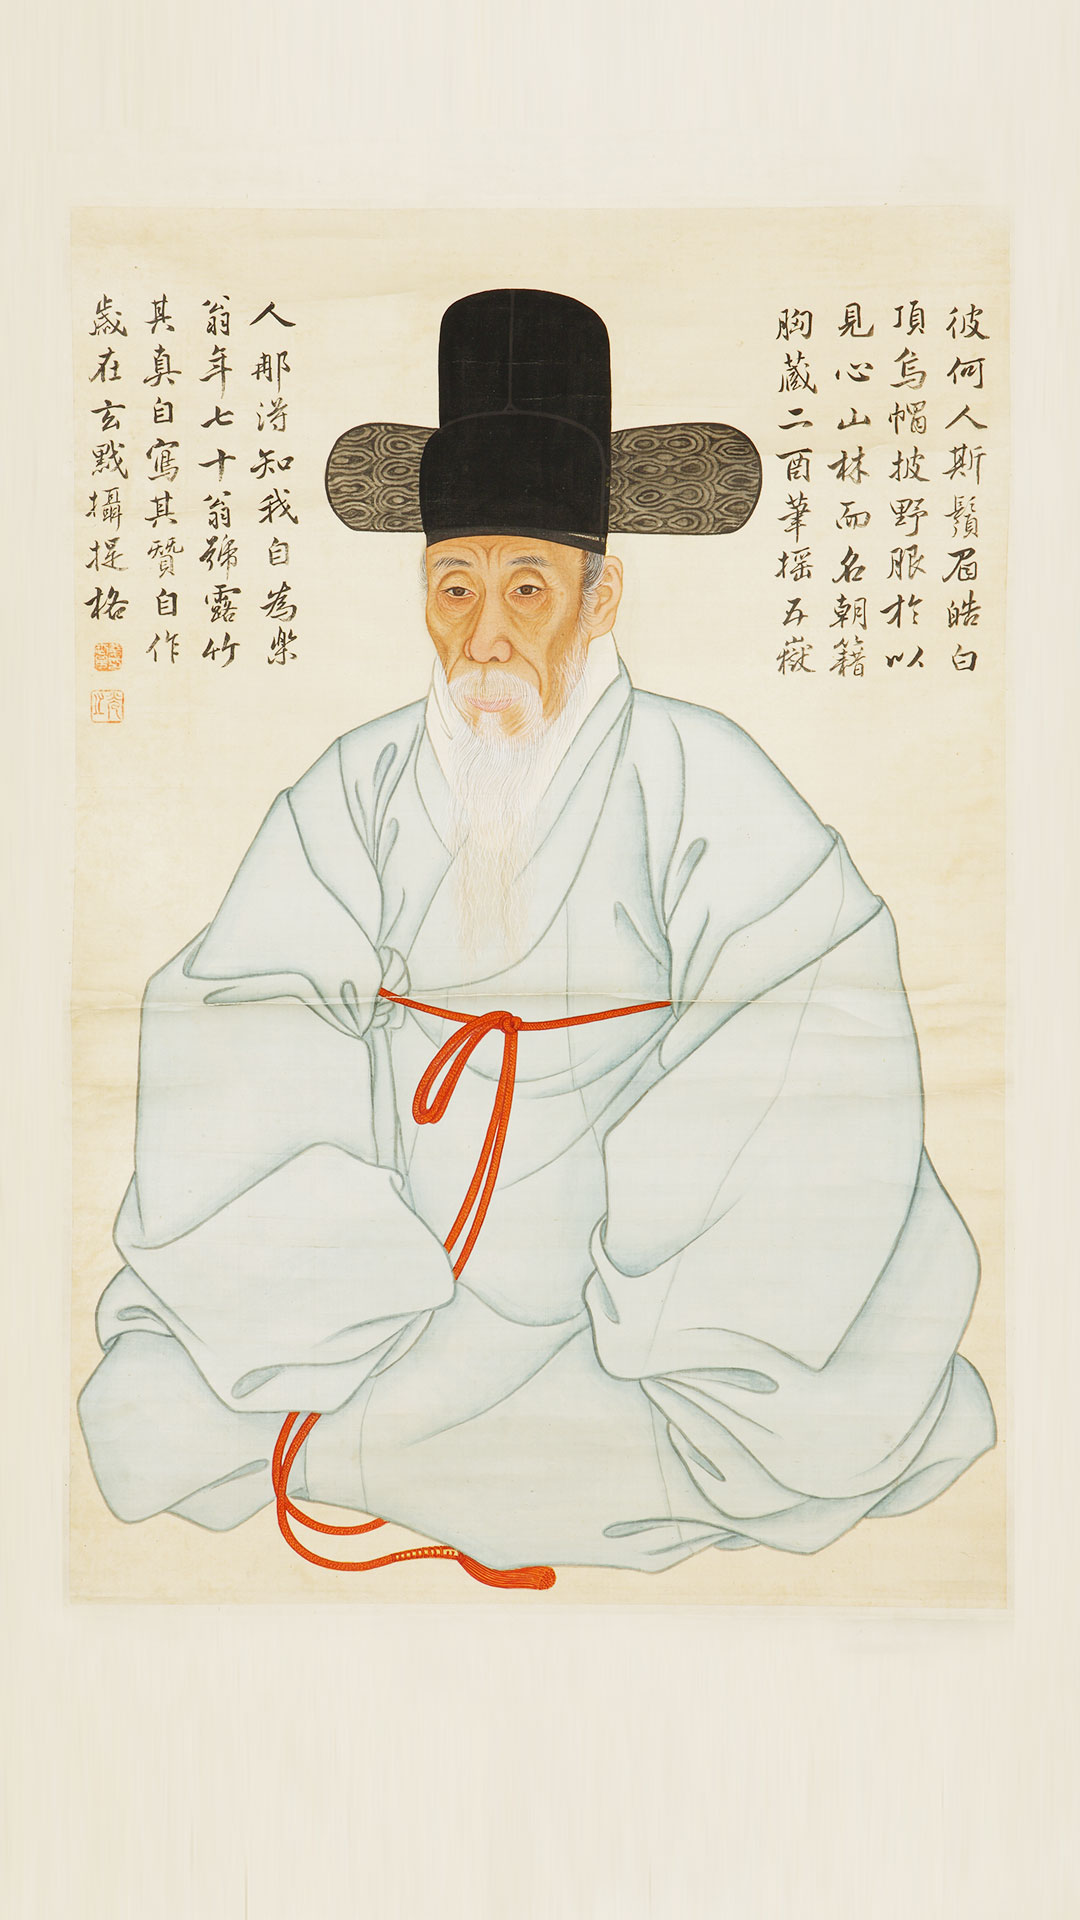 이미지 자화상 김세황황,조선 1782년 개인소장